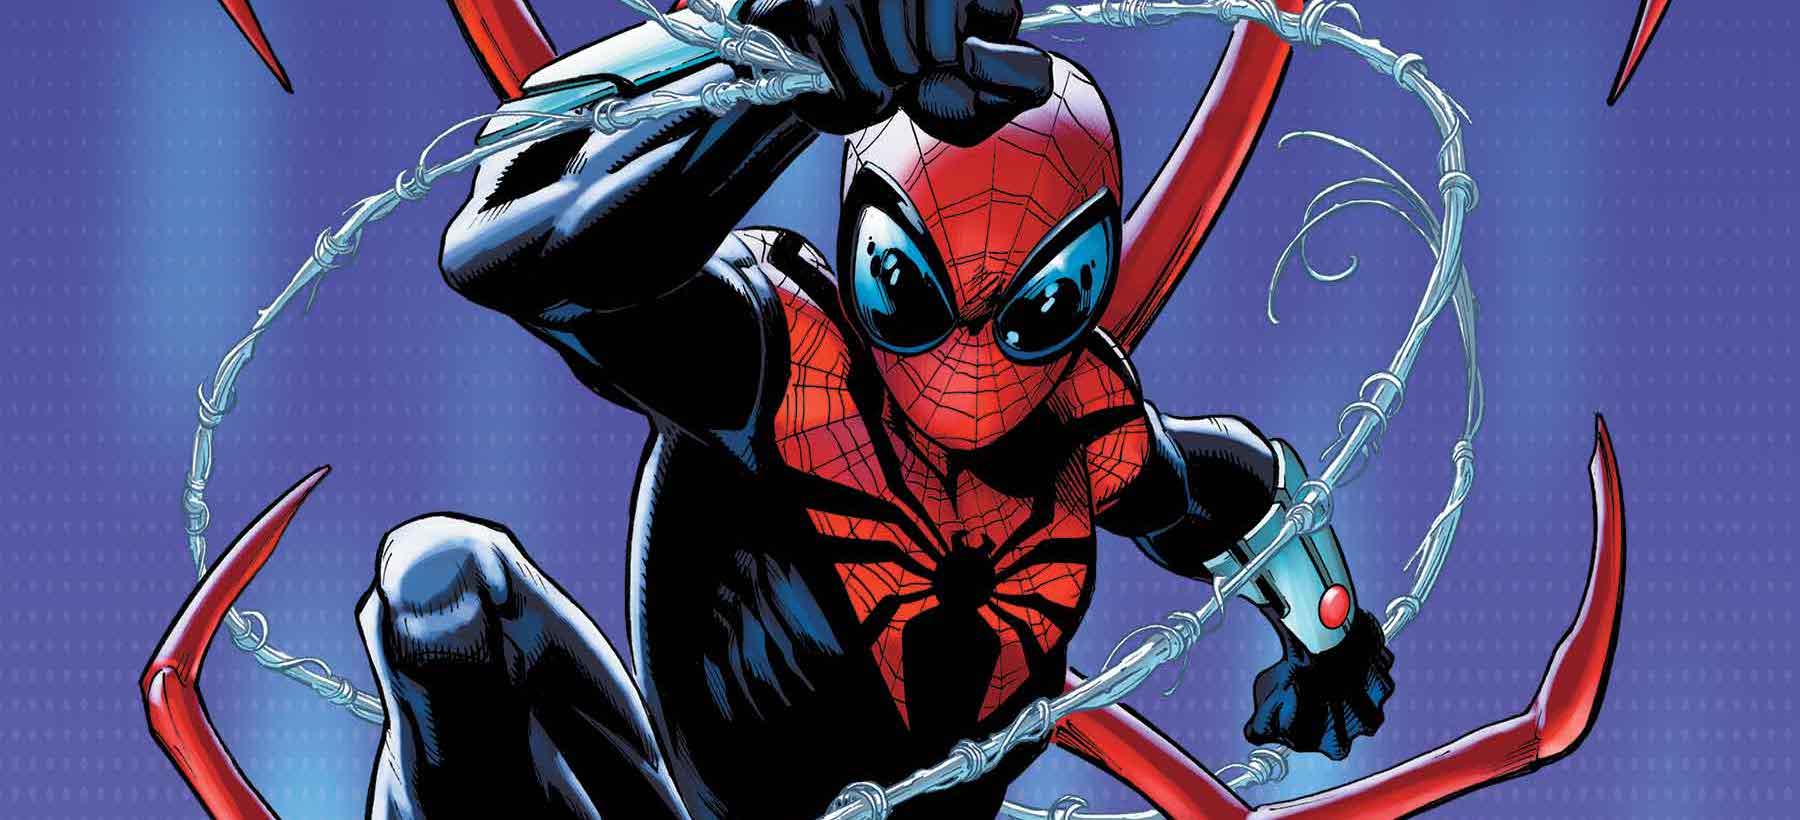 'Superior Spider-Man' #1 is fun-loving classic Spidey